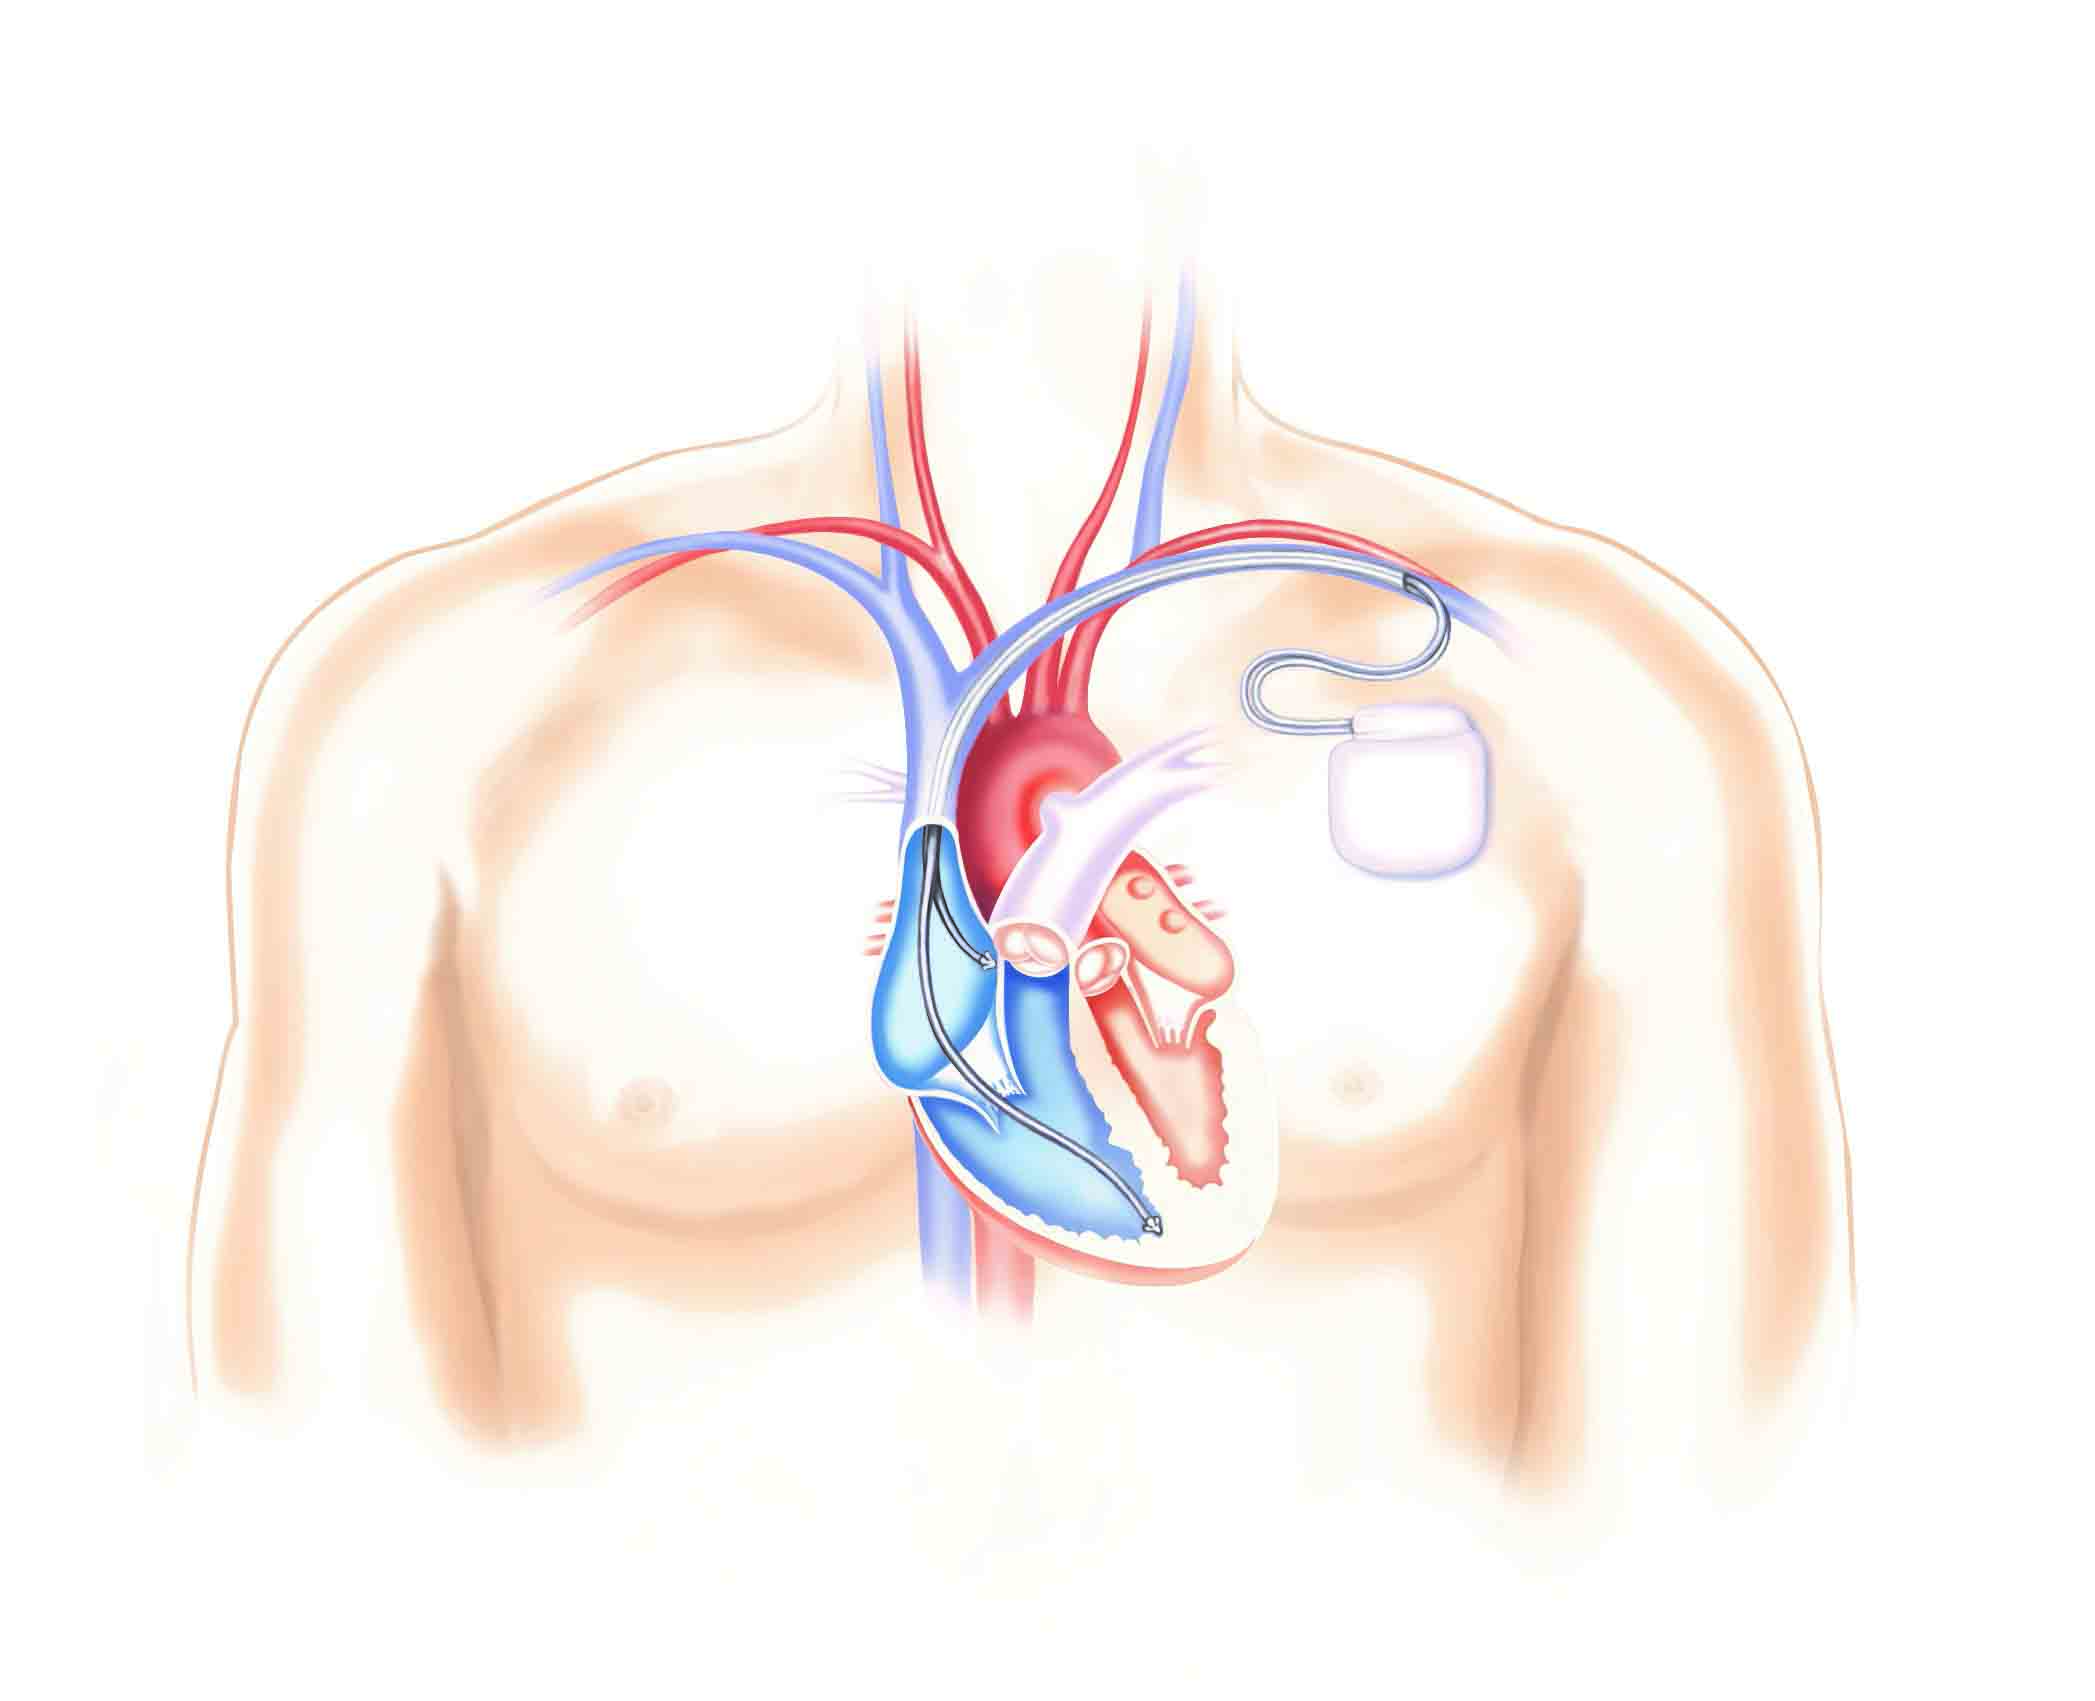 En inopererad defibrillator kallas också ICD efter den engelska förkortningen Implantable Cardioverter Defibrillator.